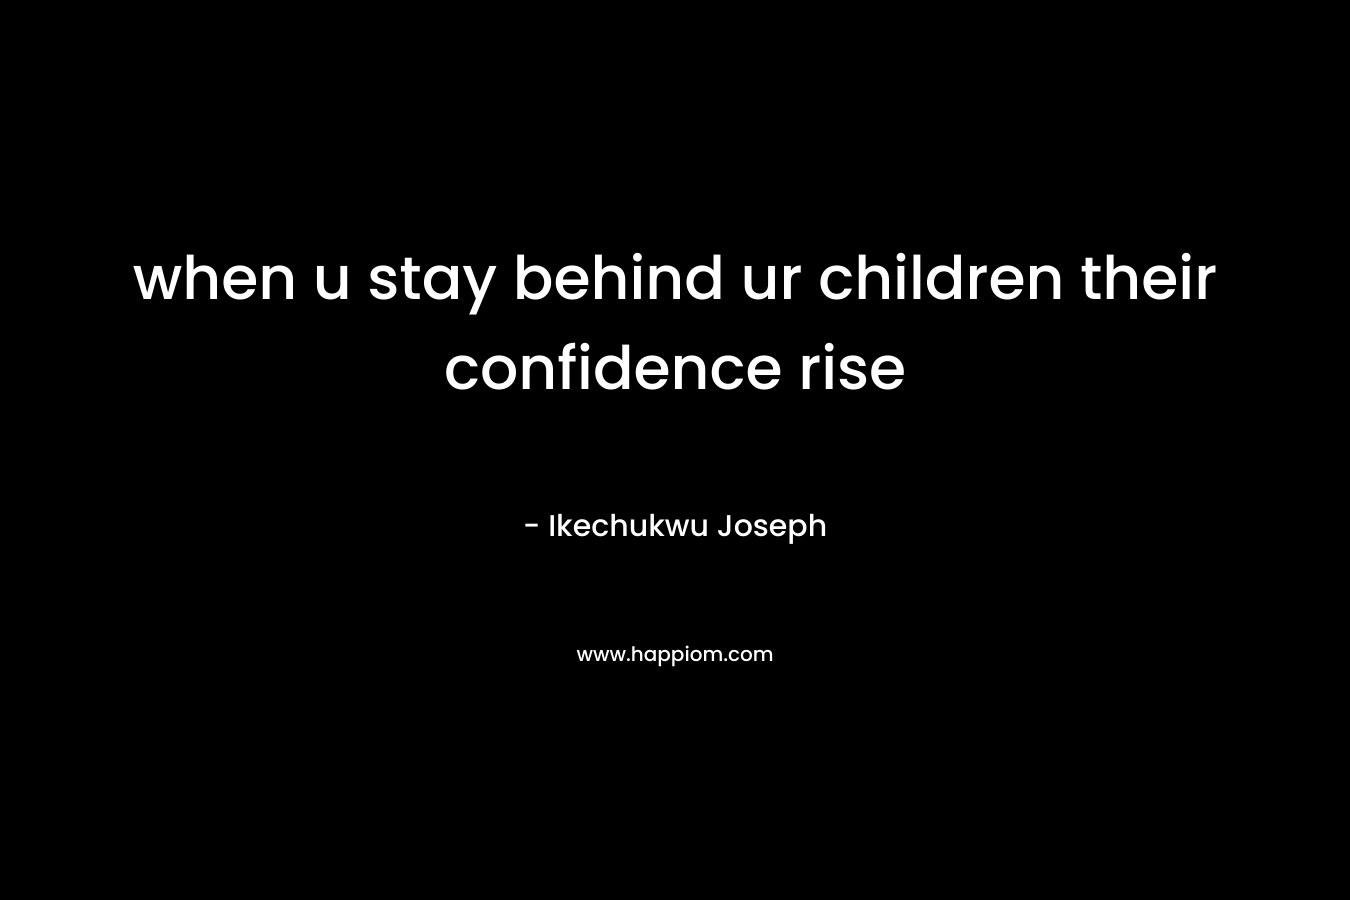 when u stay behind ur children their confidence rise